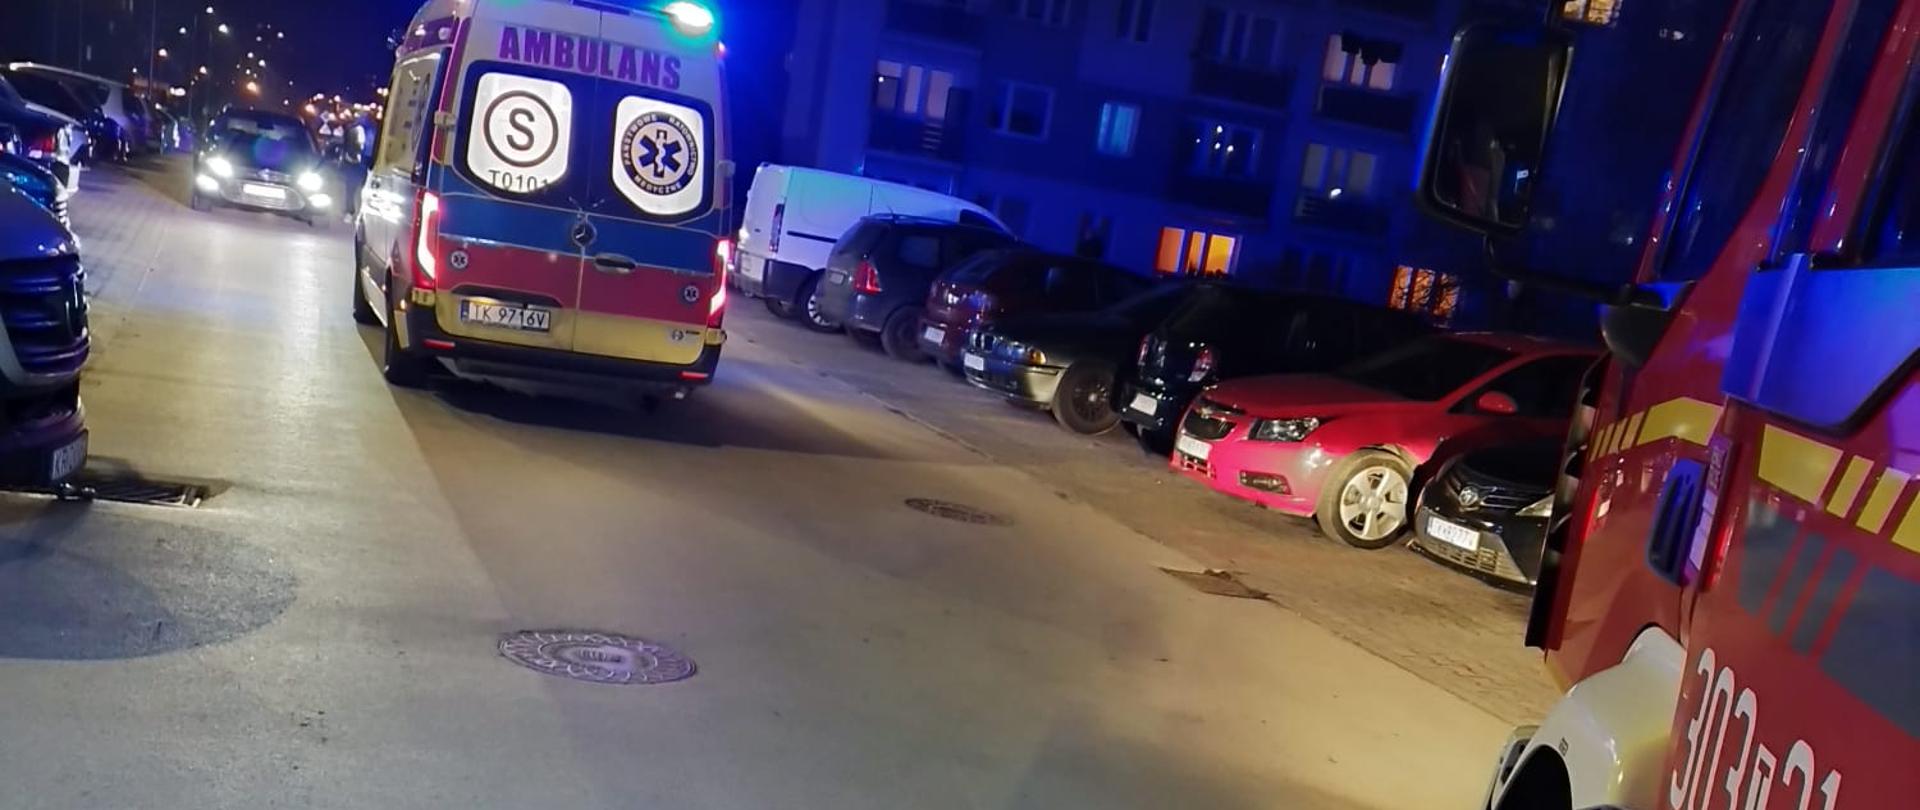 Zdjęcie przedstawia ulicę Szkolną. W centralnym punkcie fotografii widać ambulans Państwowego Ratownictwa Medycznego, a po prawej pokazano fragment wozu strażackiego. Wzdłuż ulicy stoją zaparkowane pojazdy.